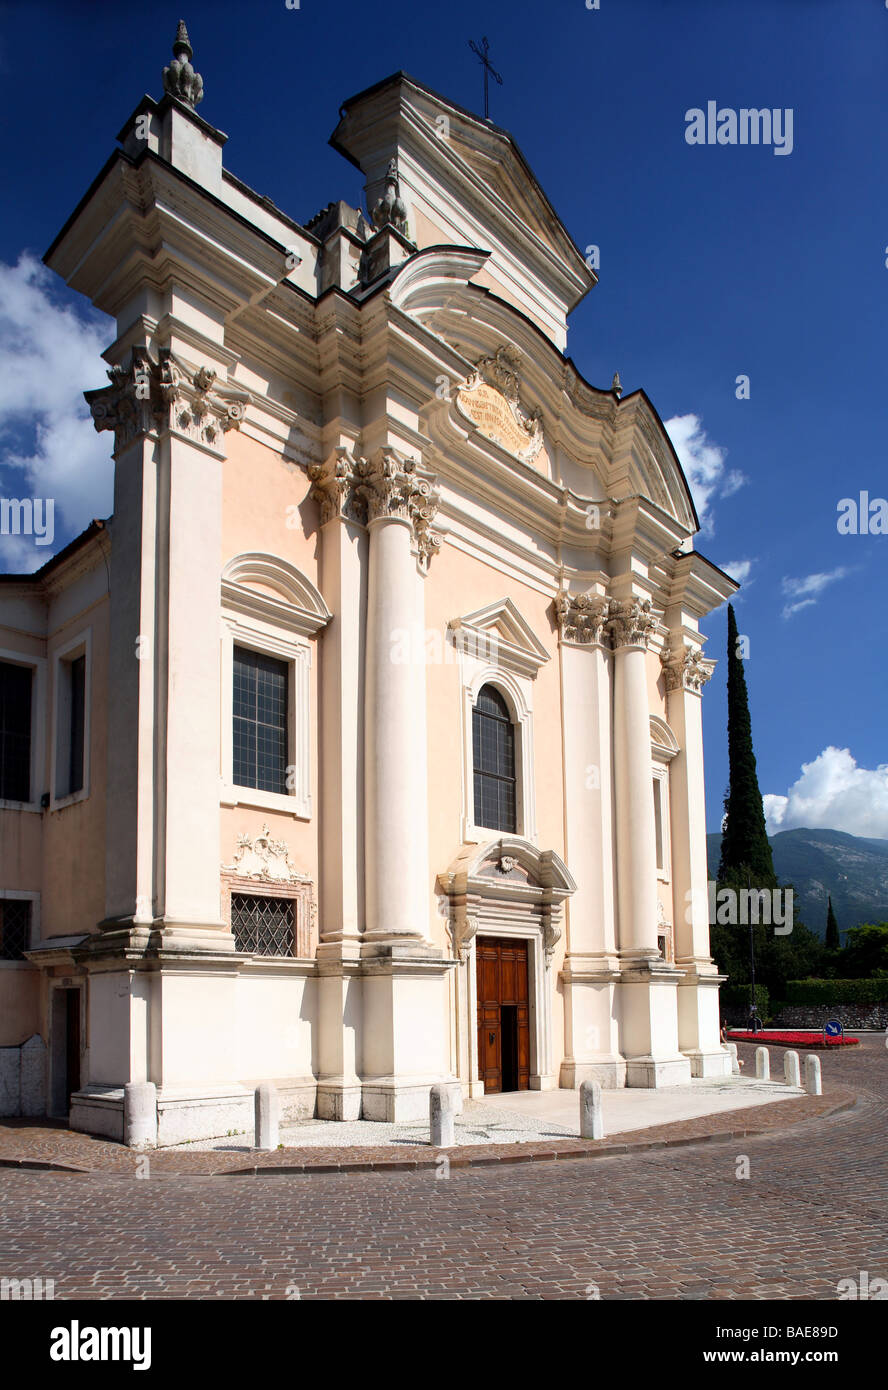 Church, Borgo Sacco, Rovereto, Trentino, Italy Stock Photo